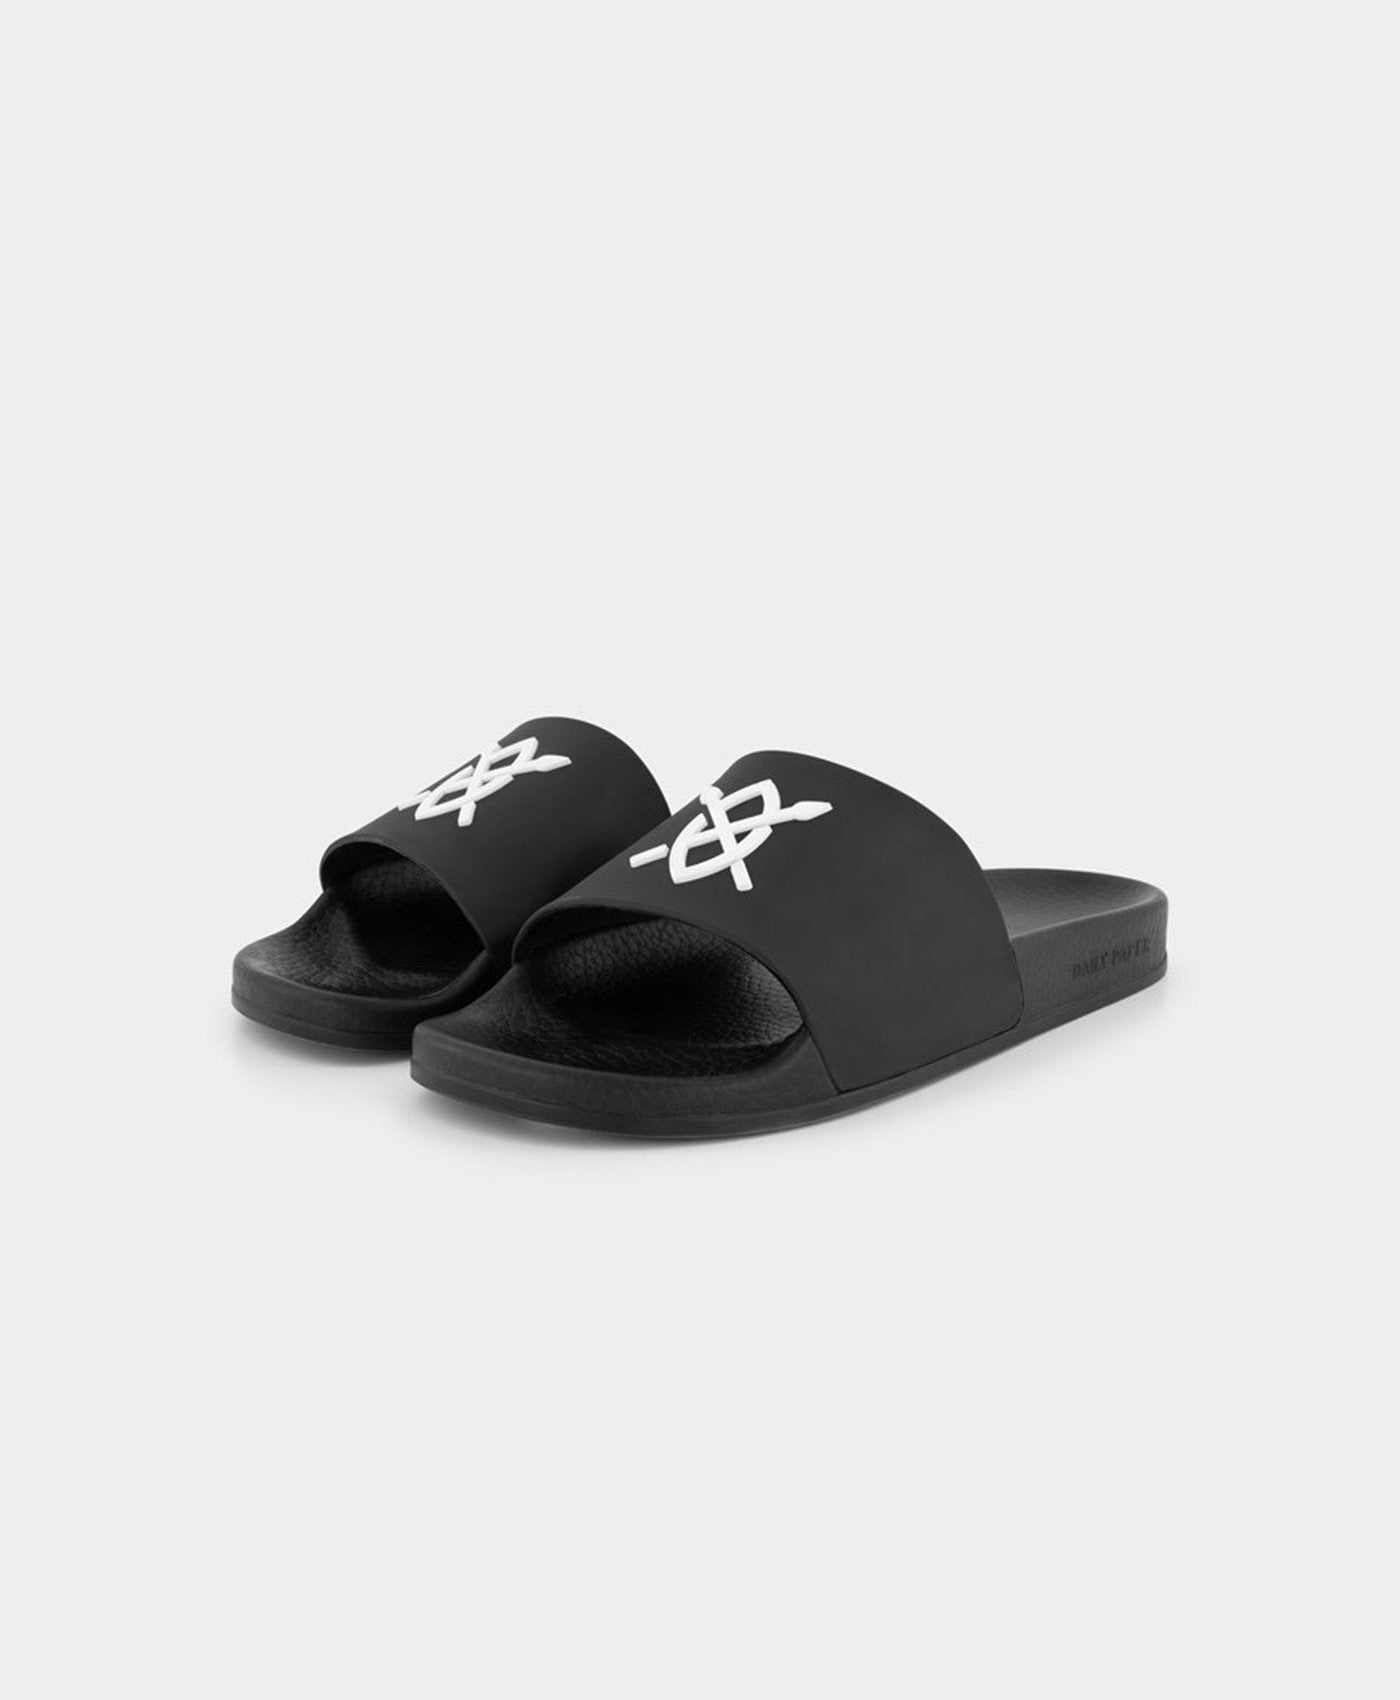 DP - Black Reslider Sandals - Packshot - Front